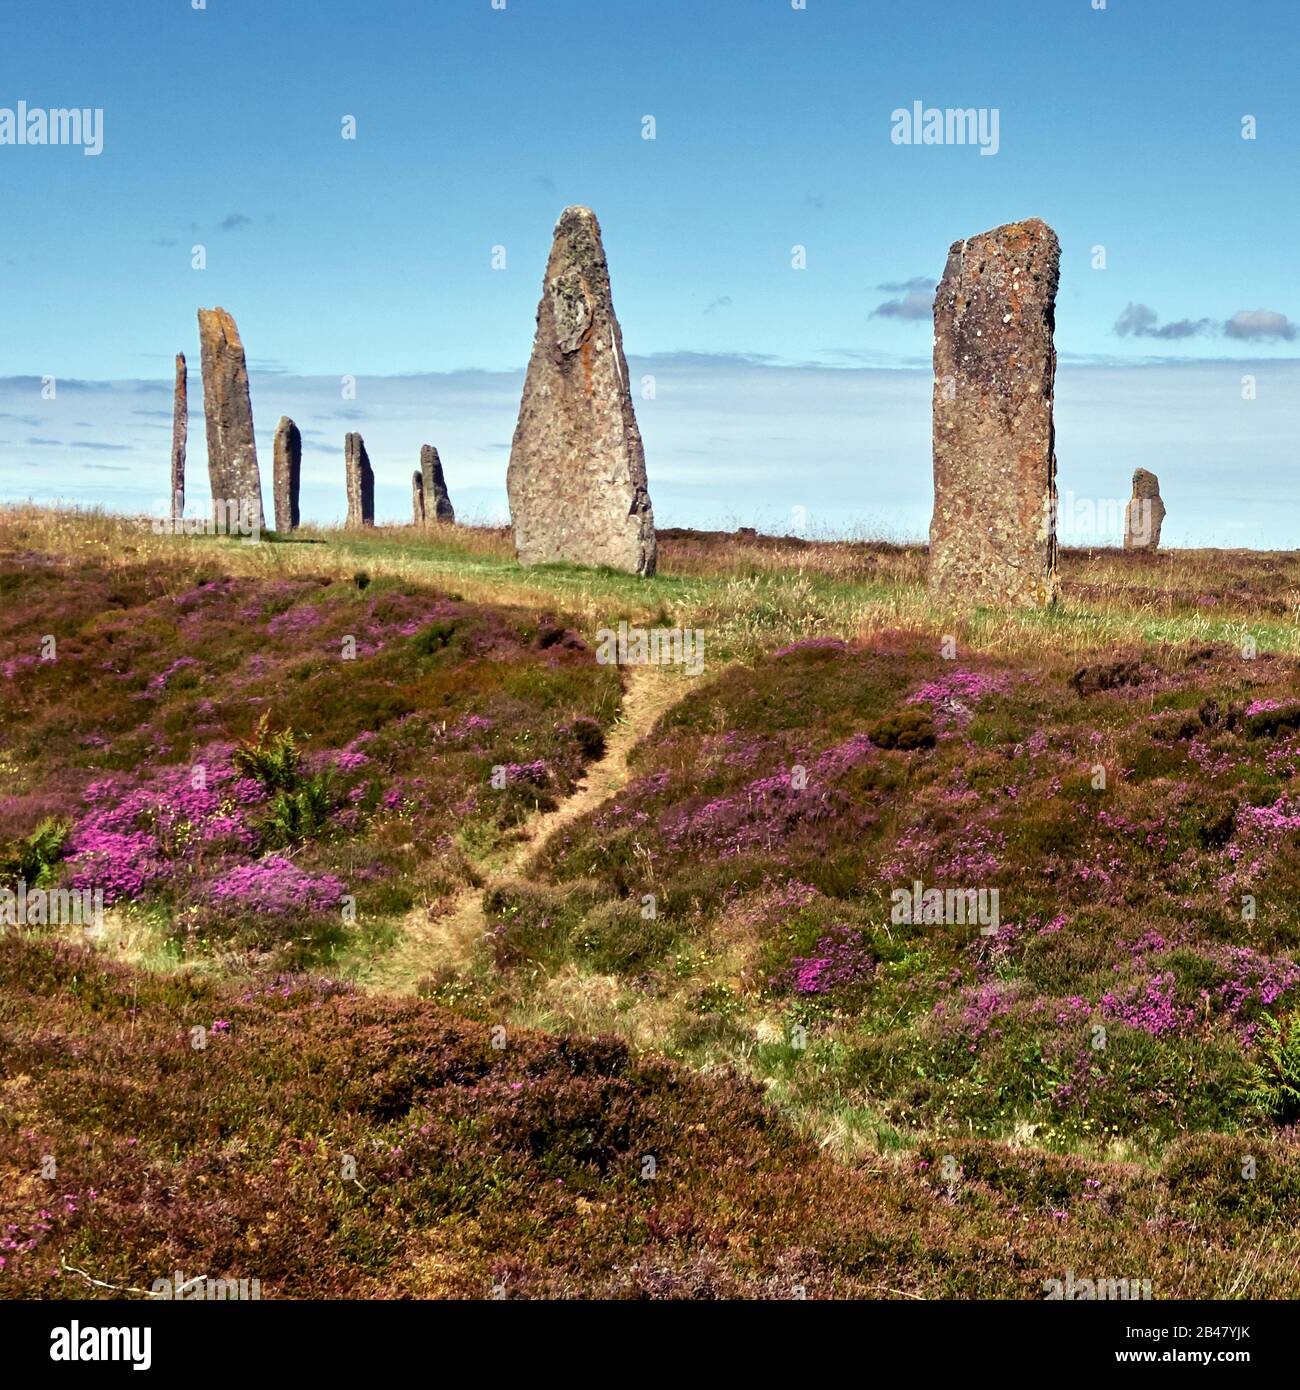 Royaume-Uni, Écosse, Orkney Islands est un archipel dans les îles du Nord de l'Écosse, dans l'océan Atlantique, il a d'anciennes pierres de l'anneau de Brodgar dans les îles Orkney au large de la côte nord de l'Écosse. Ce monument au coeur du site du patrimoine mondial de l'Orkney néolithique aurait été construit entre 4000 et 4500 ans auparavant. Construit à l'origine avec soixante pierres dans un cercle de plus de 100 mètres de travers, moins de la moitié des pierres restent debout. La plus haute des pierres mesure un peu plus de 4,5 mètres (15 pieds) de hauteur Banque D'Images